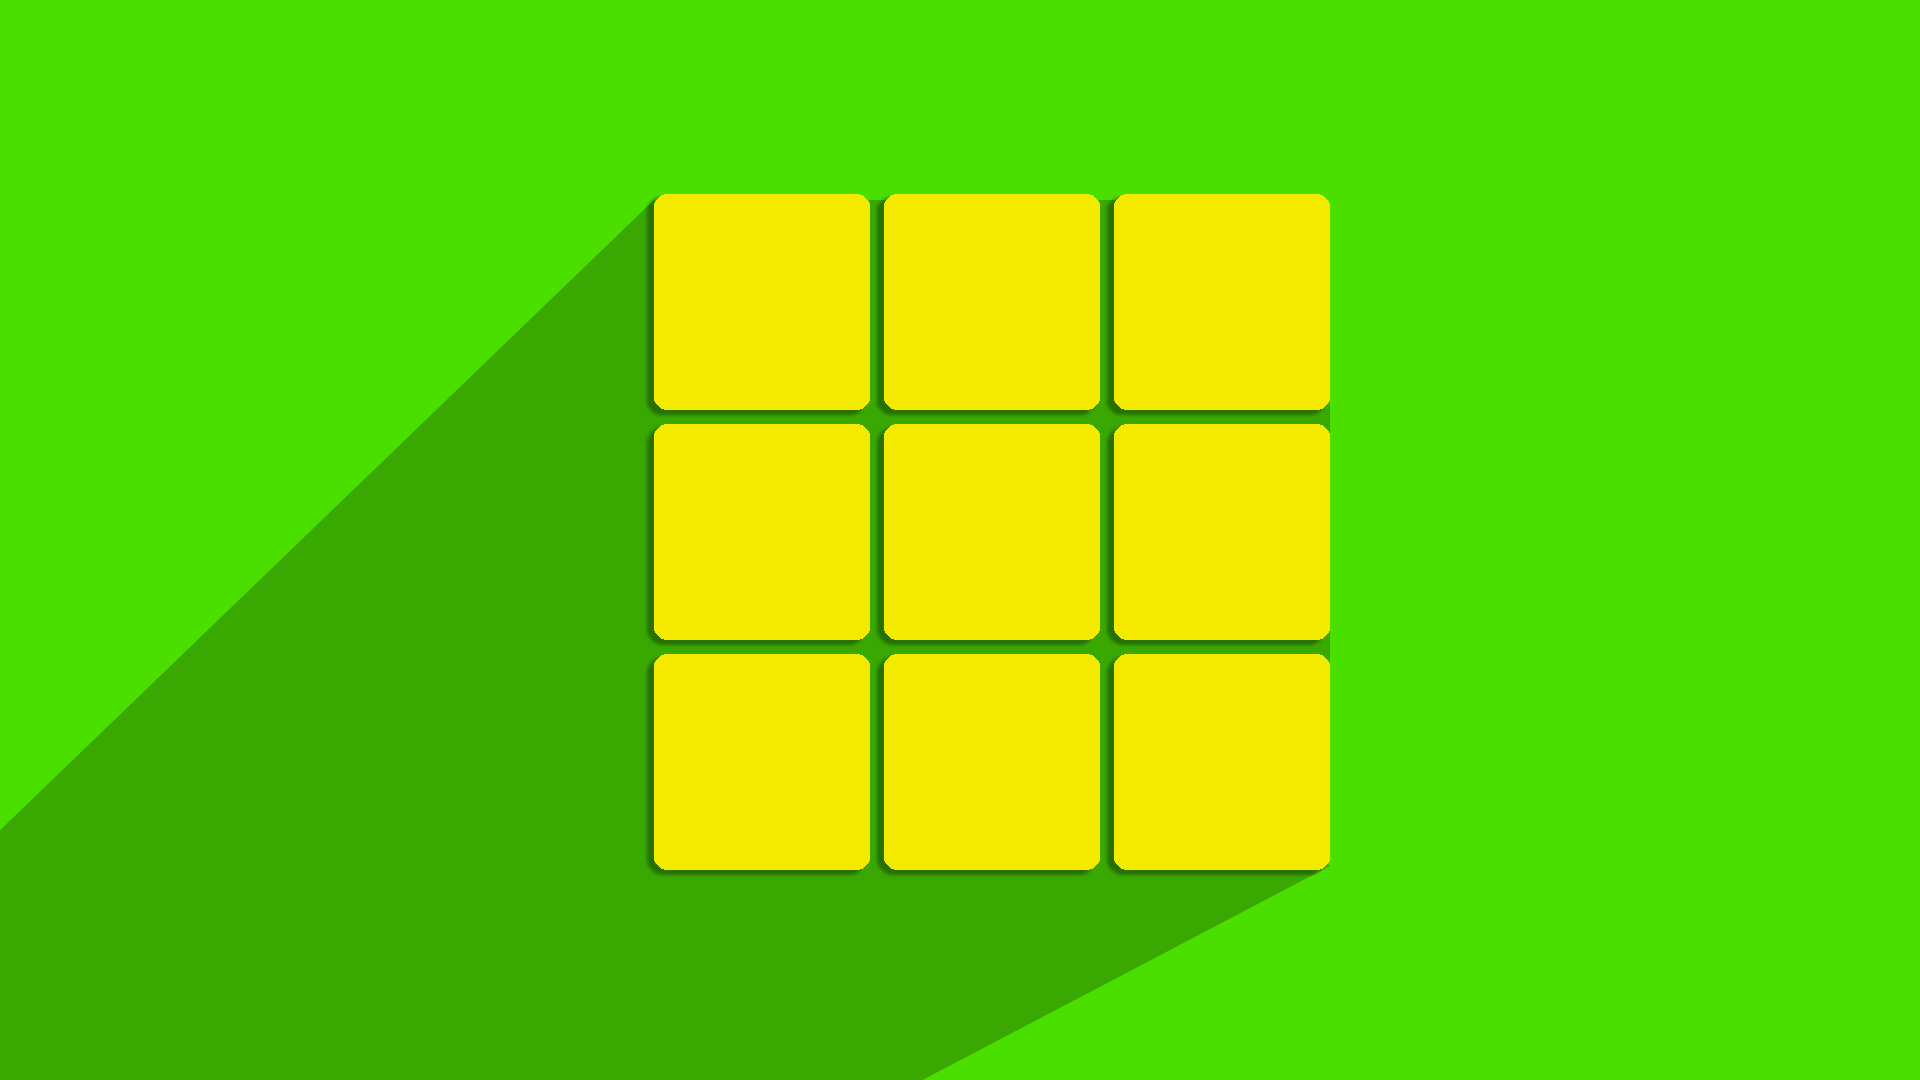 The Beginner's Method for Solving the Rubik's Cube